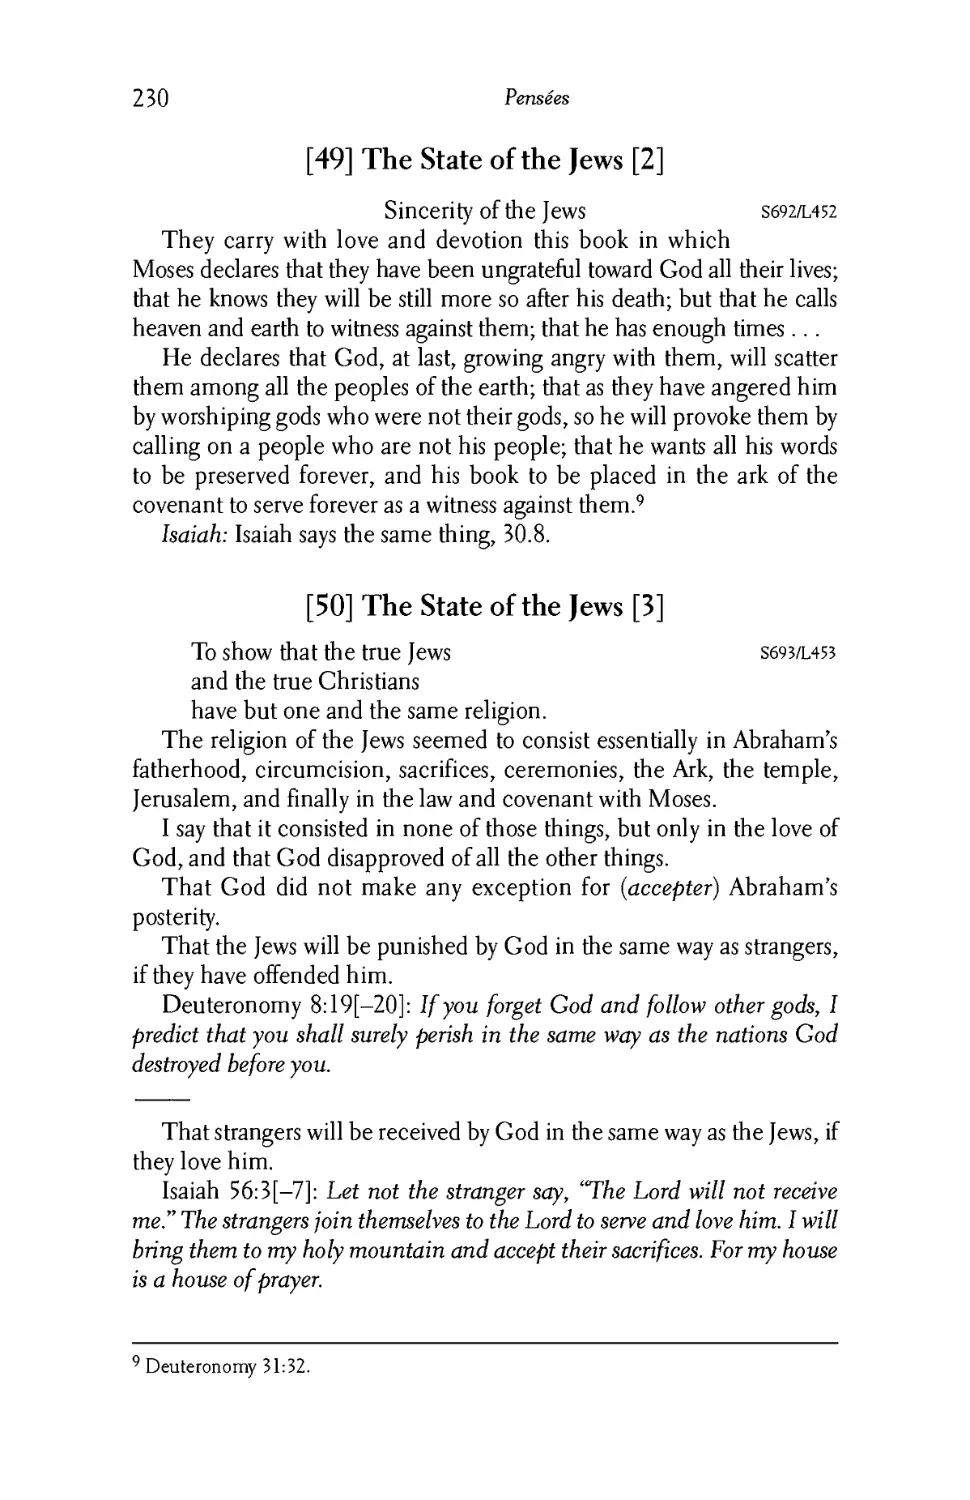 49. The State of the Jews 2
50. The State of the Jews 3